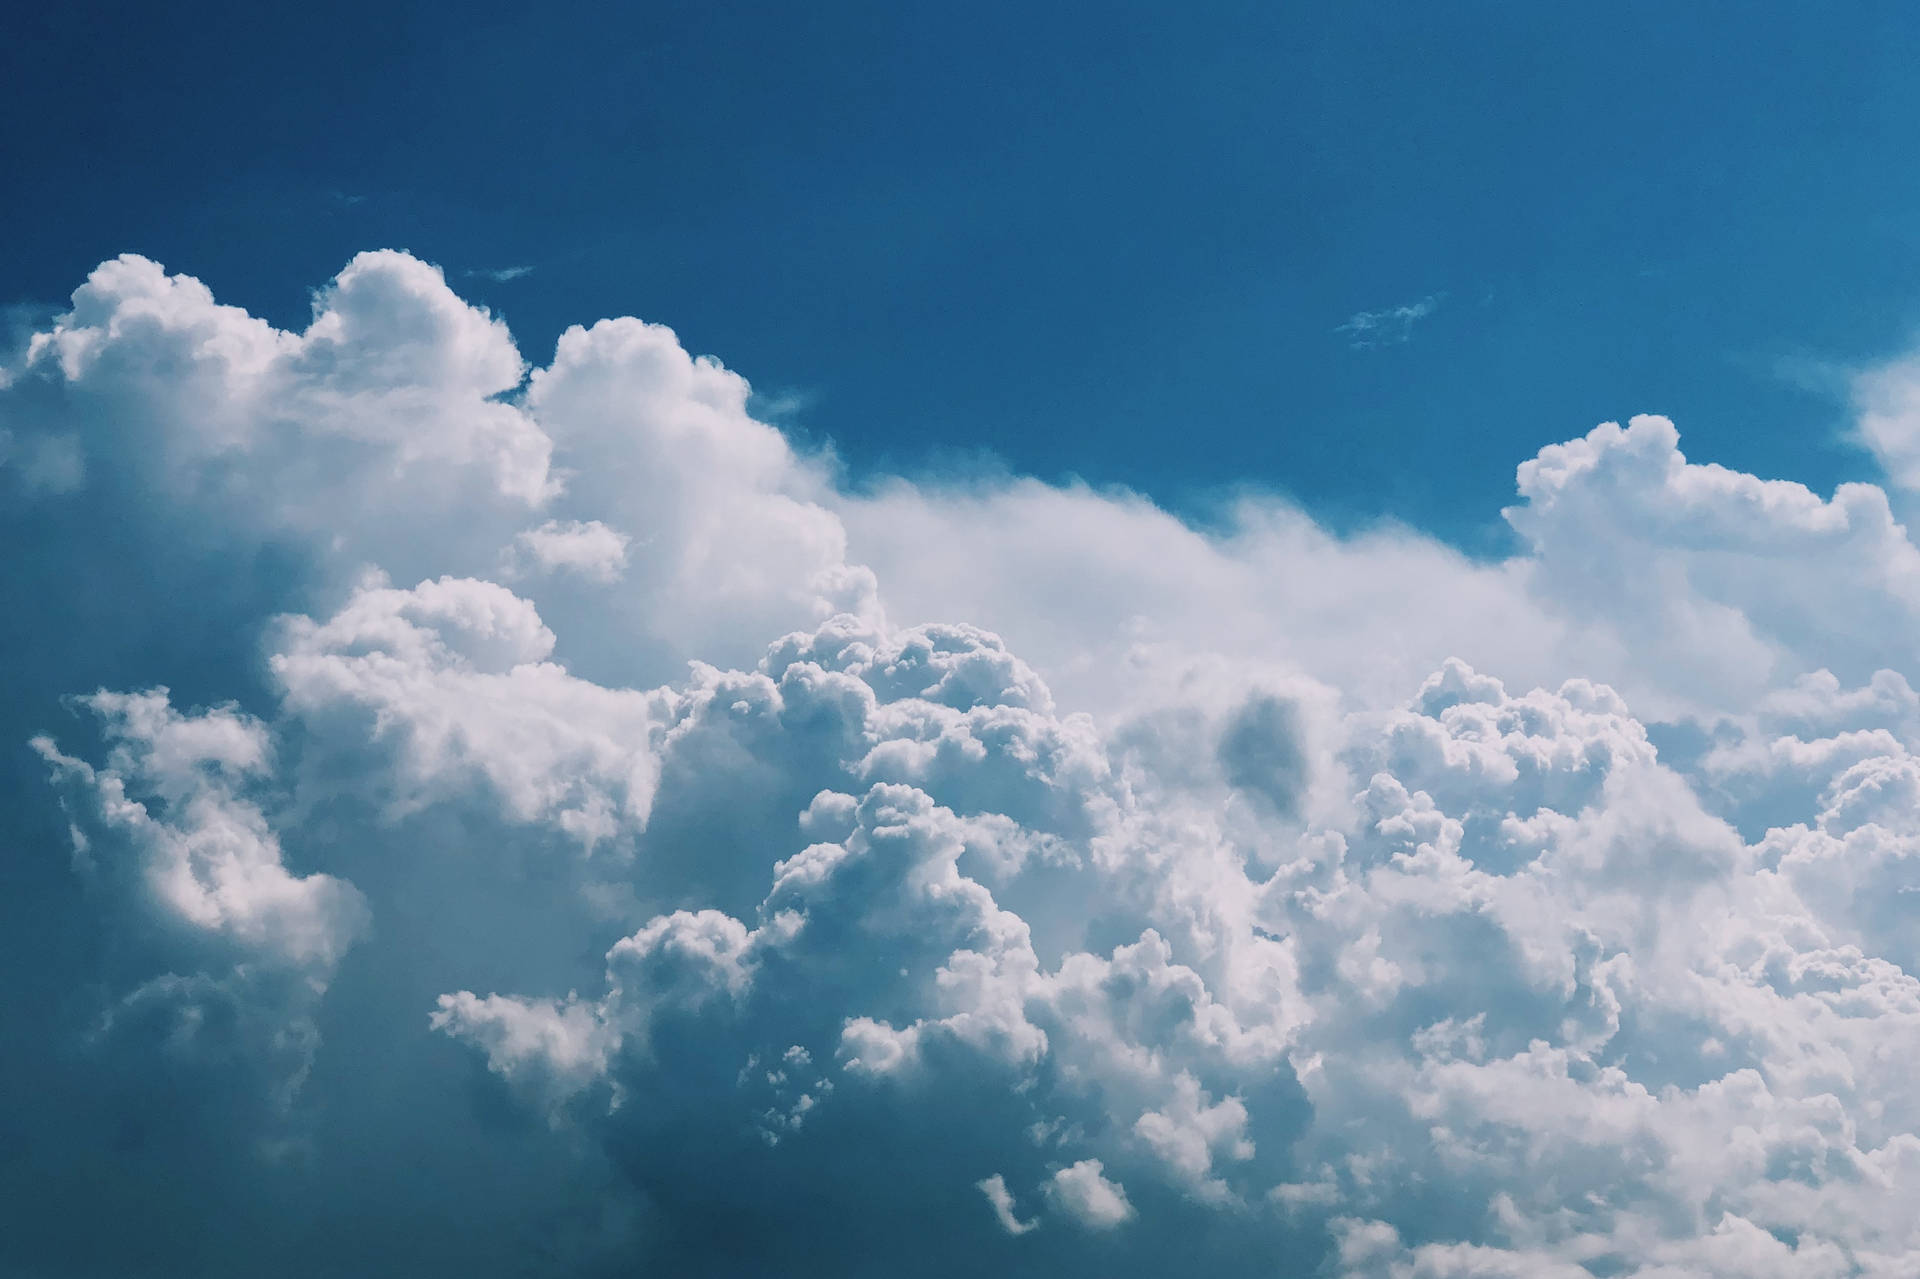 Clouds In A Beautiful Blue Sky Wallpaper